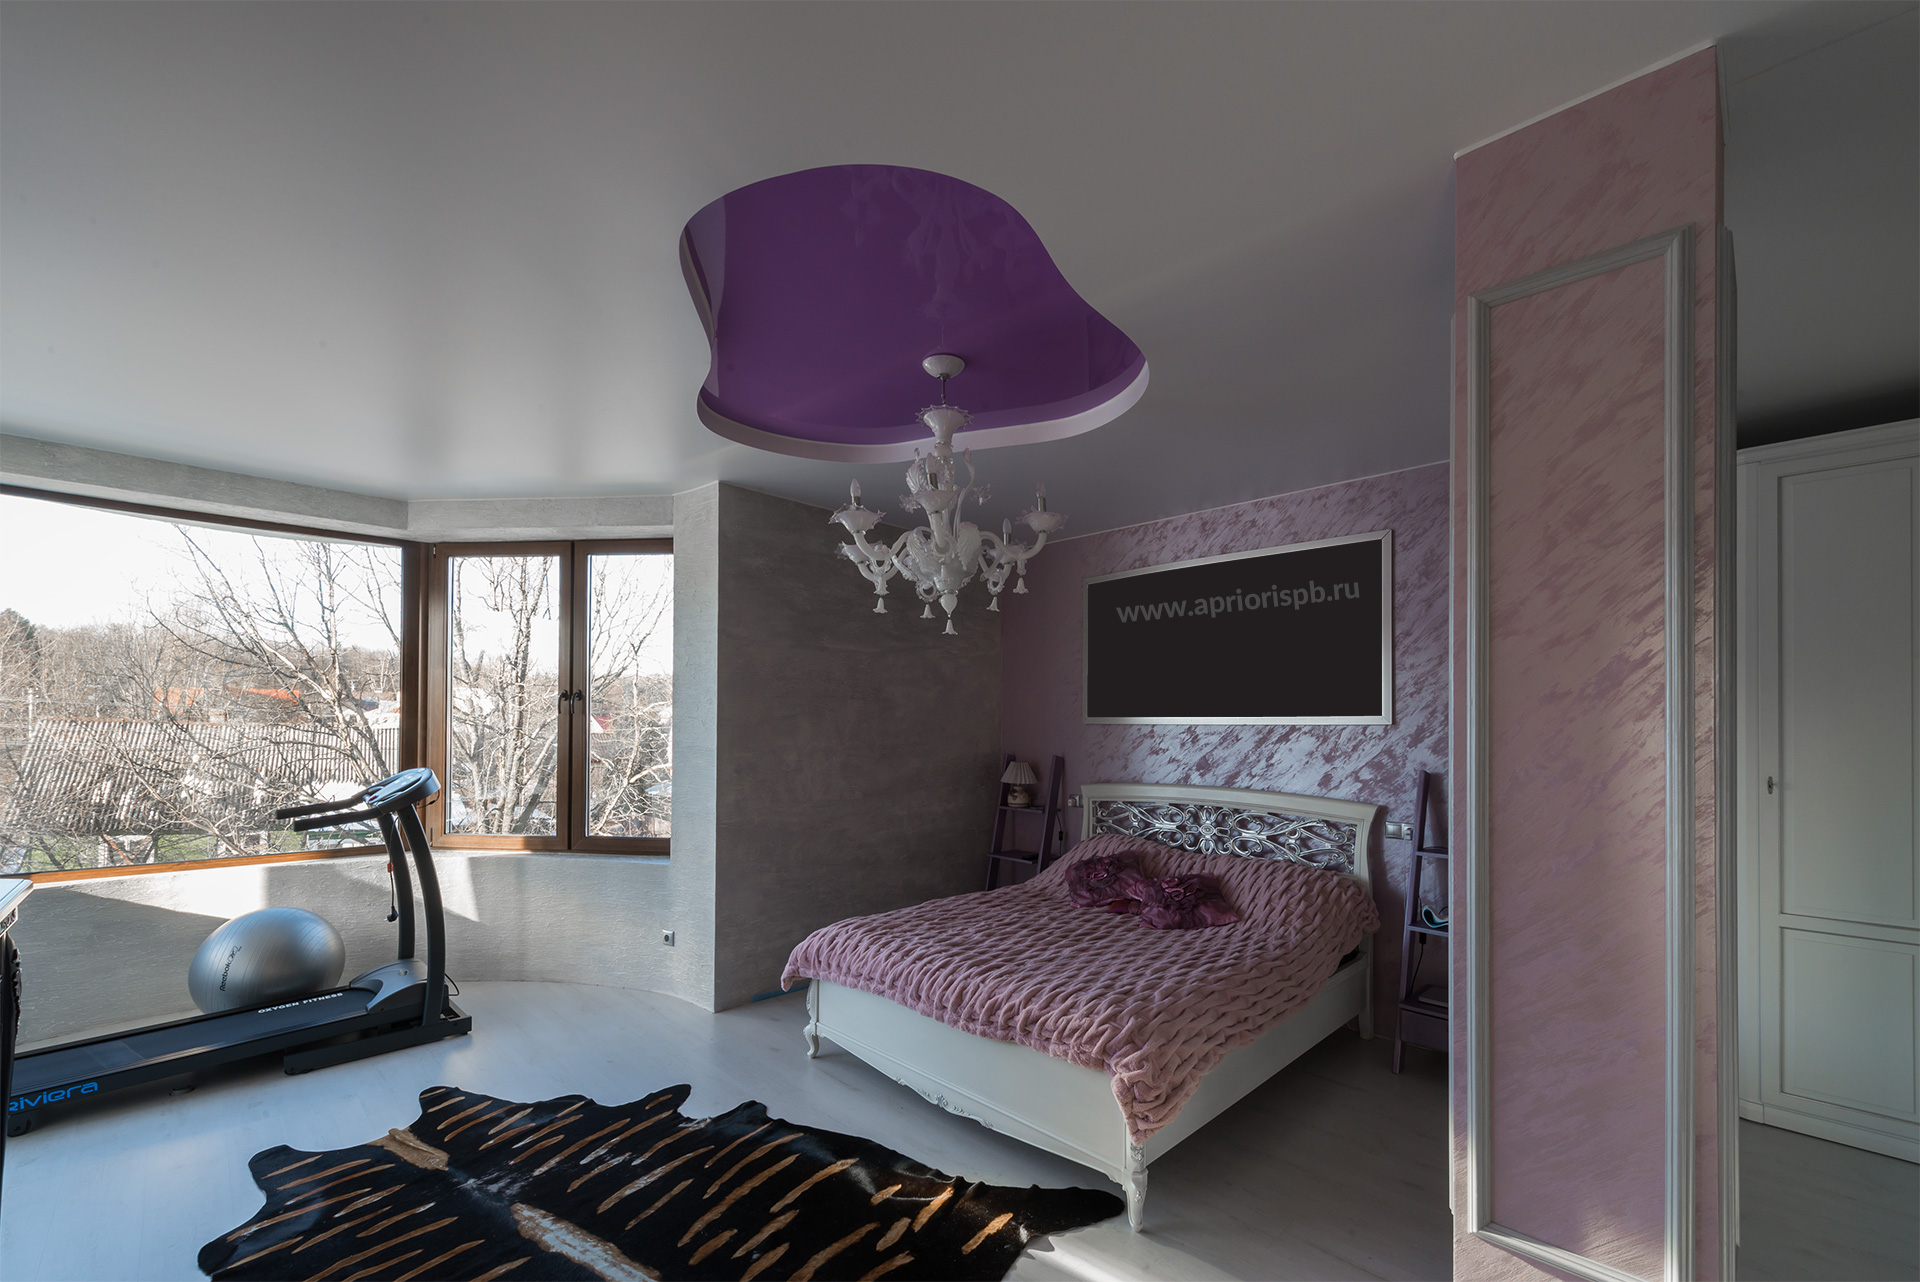 Двухуровневый ПВХ потолок с подсветкой, потолок в спальне, натяжной потолок, фиолетовй, розовый, двухуровневый натяжные потолки, натяжные потолки в спб, санкт-петербург, компания априори